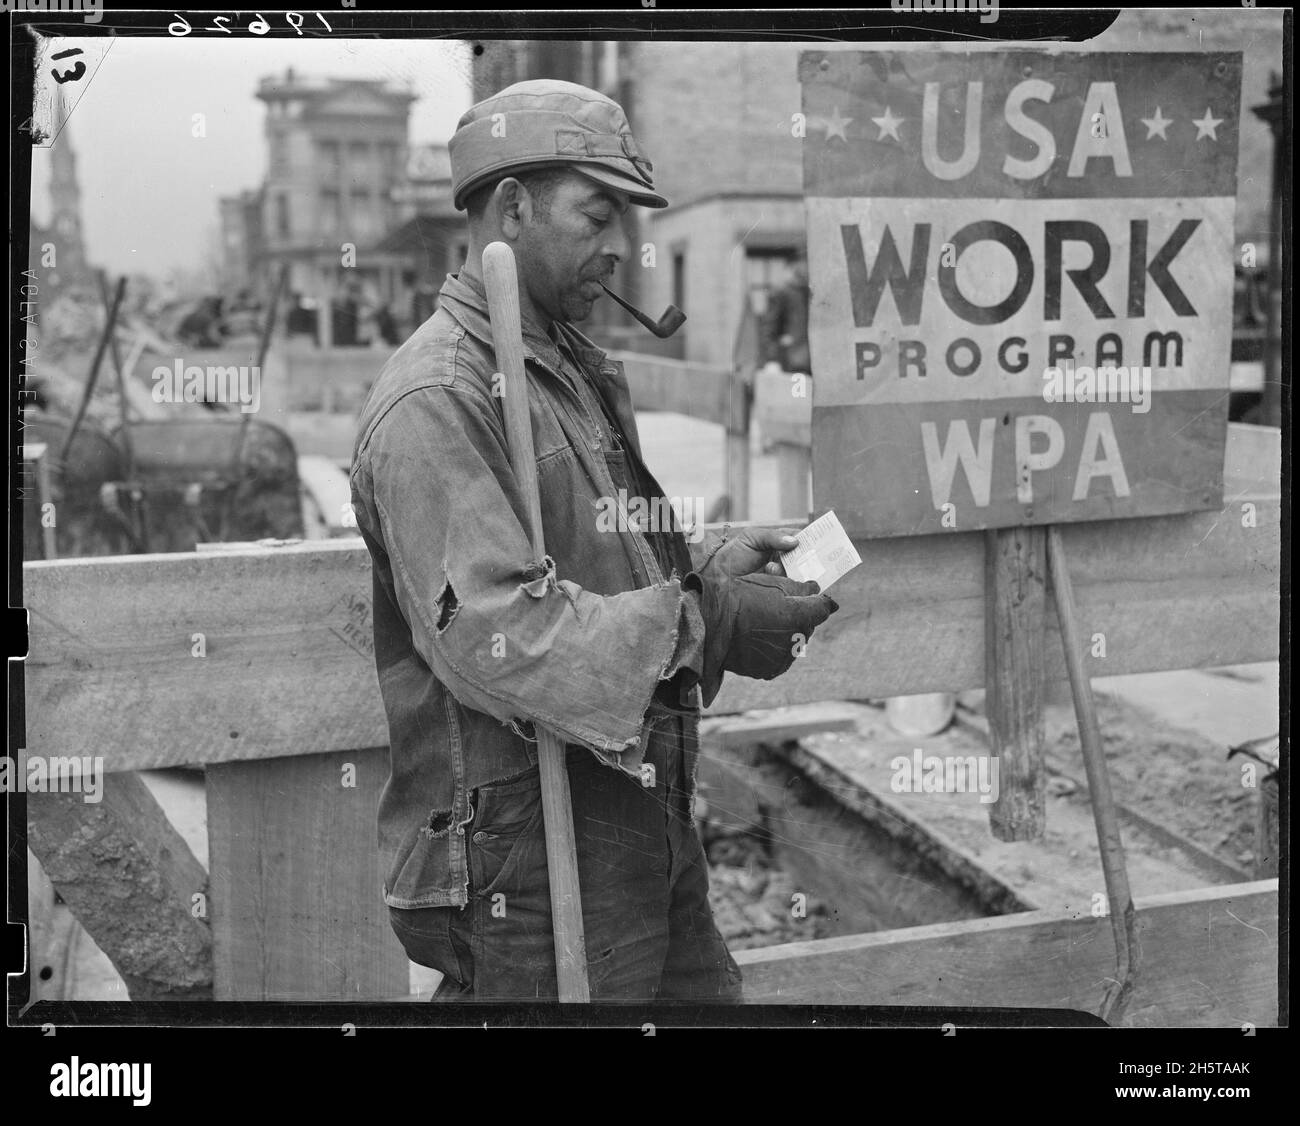 Fotografia di un lavoratore non identificato di Works Progress Administration che riceve un assegno di stipendio dal governo federale, 1939. Foto di Works Progress Administration Foto Stock